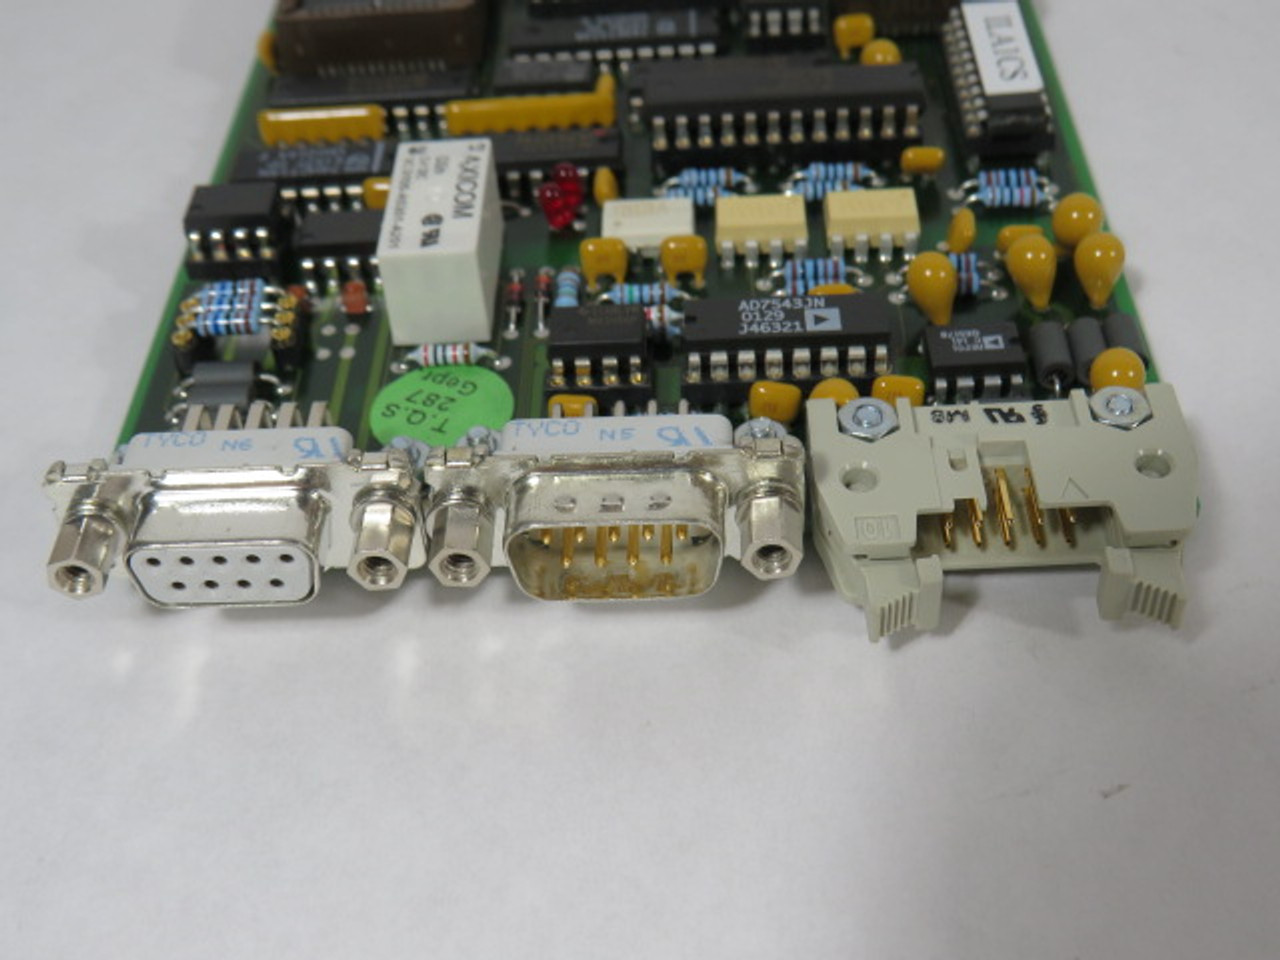 Pulzer Biegetechnik ISA96-LA1 V2.0 Memory & Control Circuit Board ! NOS !